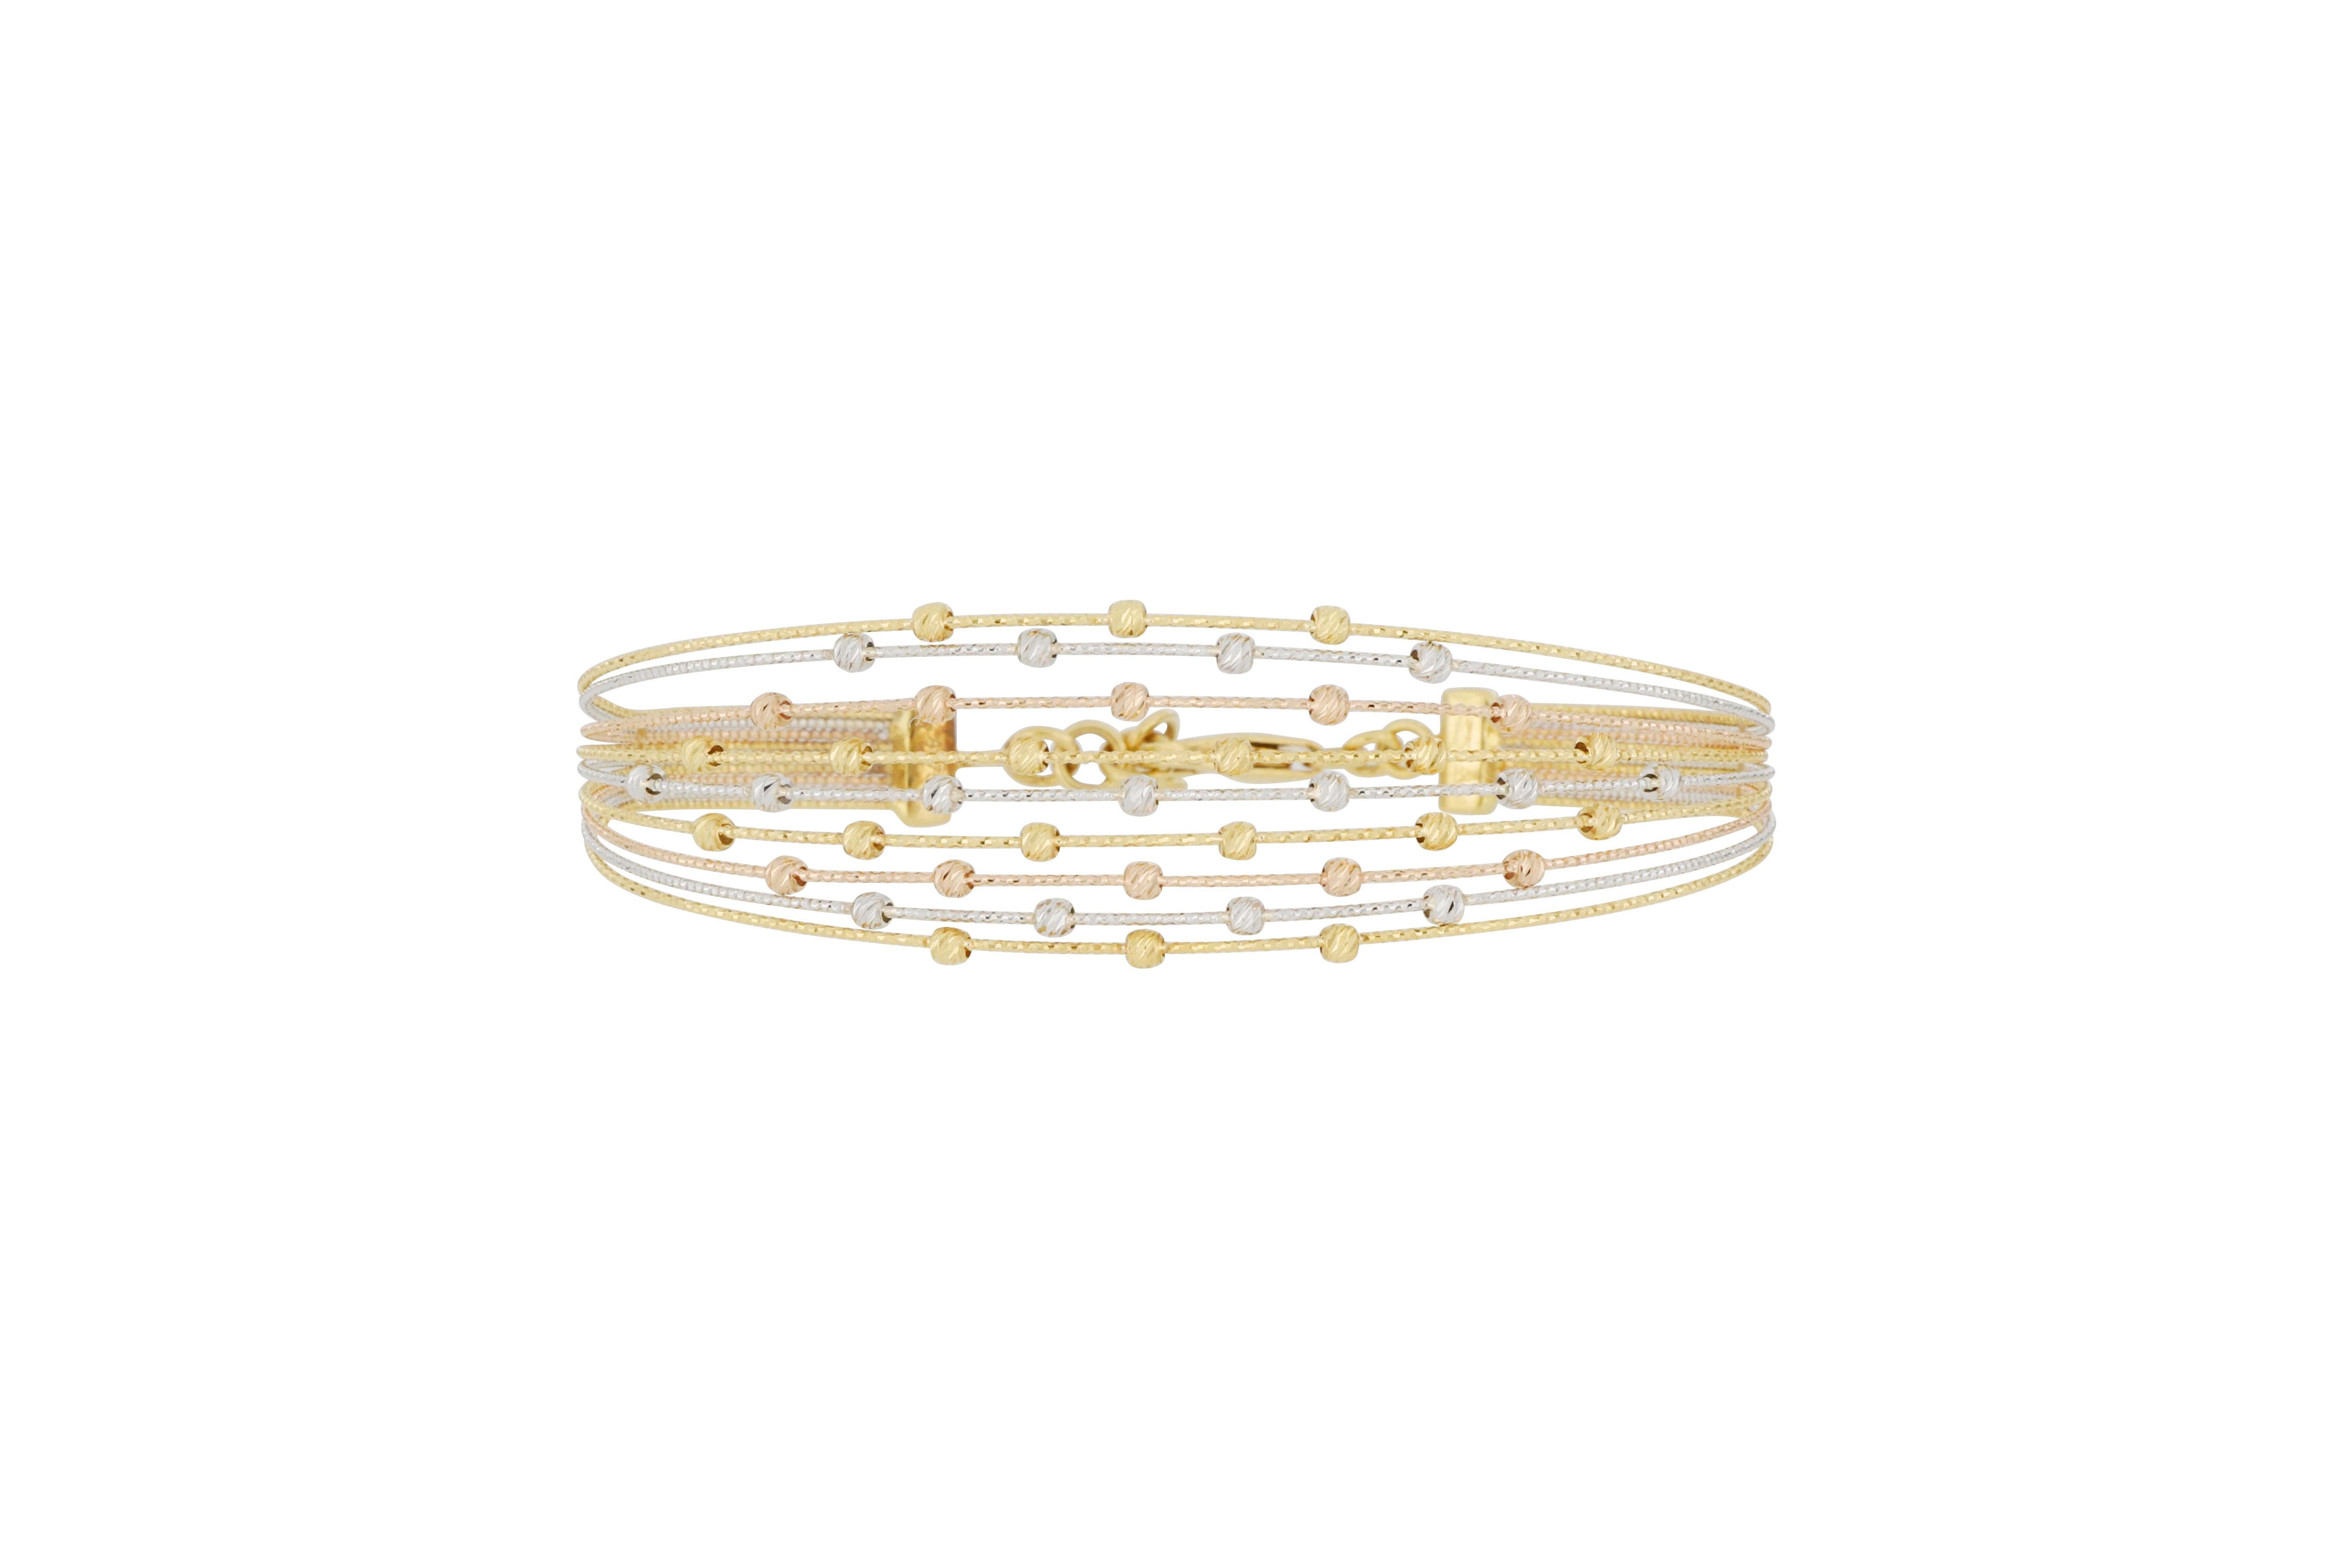 Ce magnifique bijou italien est en or 18 carats, décoré de perles taillées en trois couleurs, cousues en un bracelet étincelant avec de gracieux fils d'or fin, décontracté et élégant, à porter tous les jours. Le bracelet peut également être ajusté